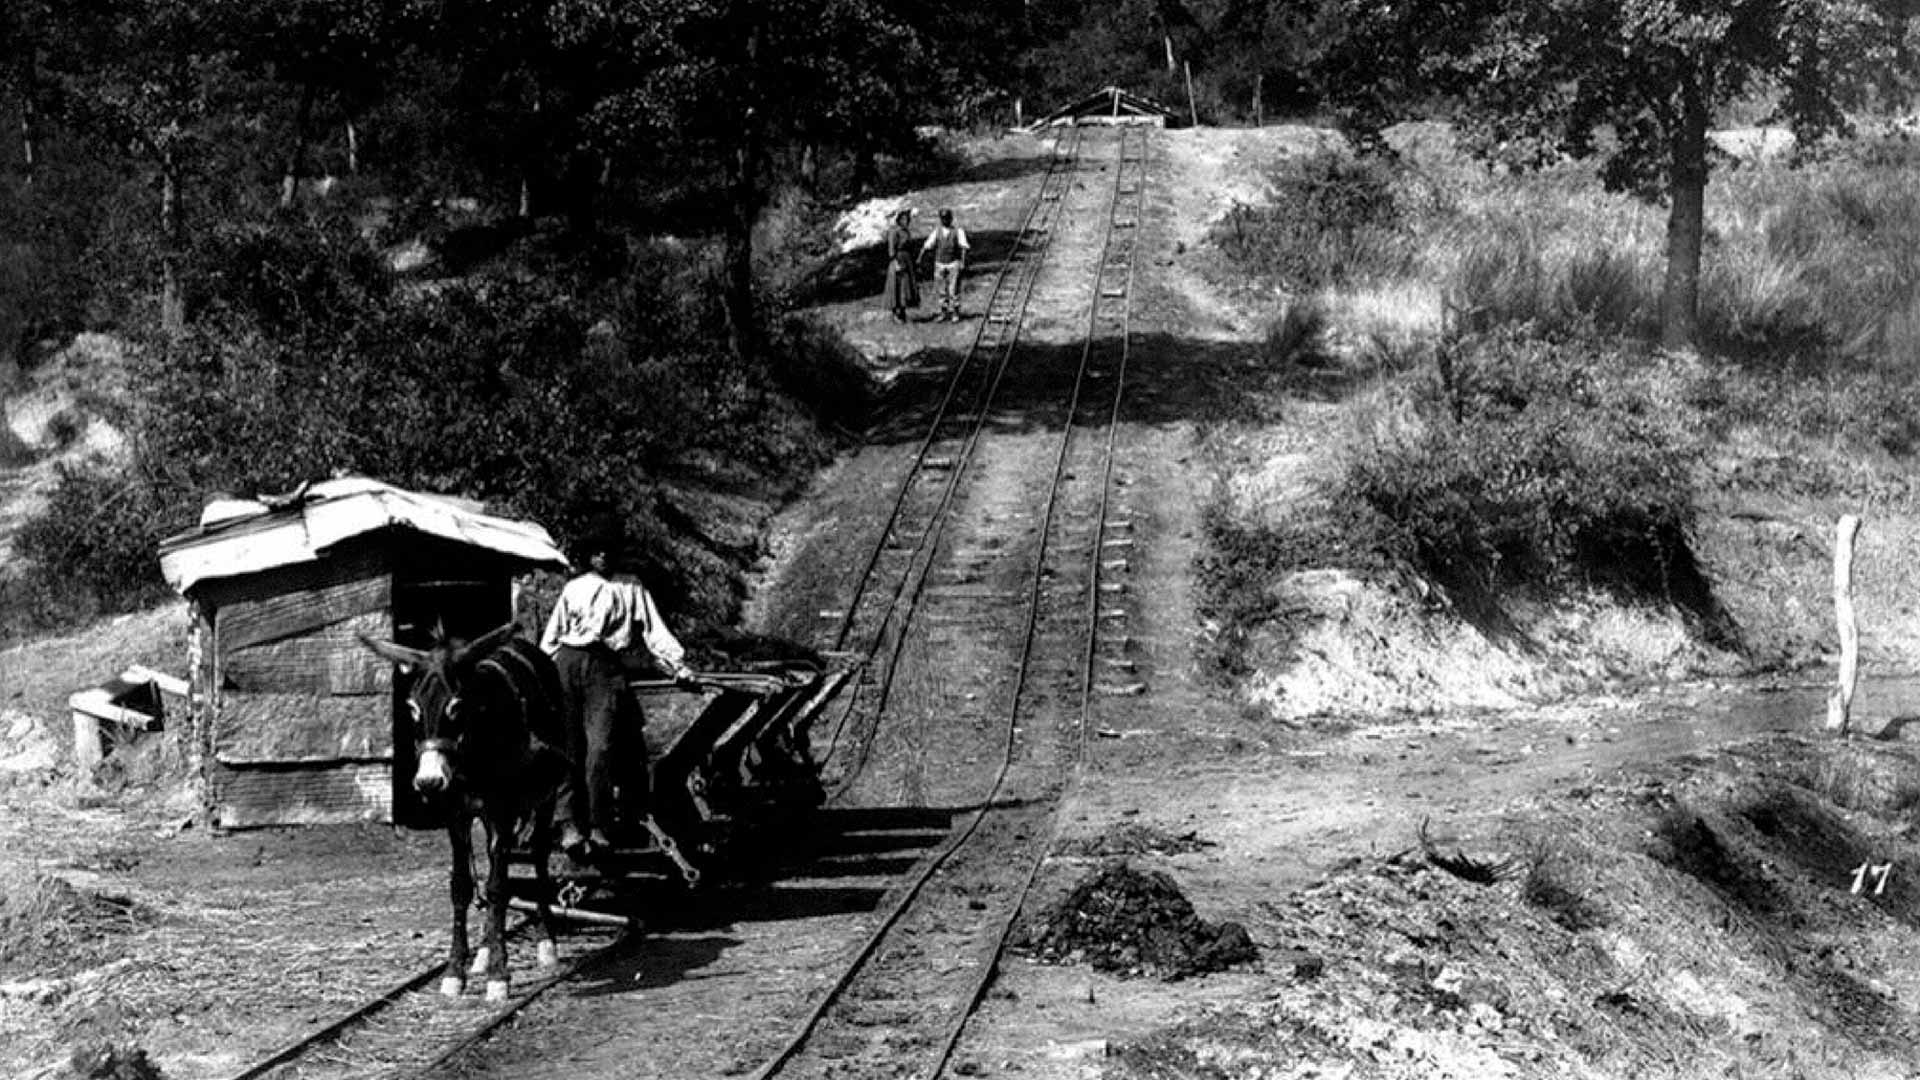 La récolte du charbon. Archives photographiques Alinari.